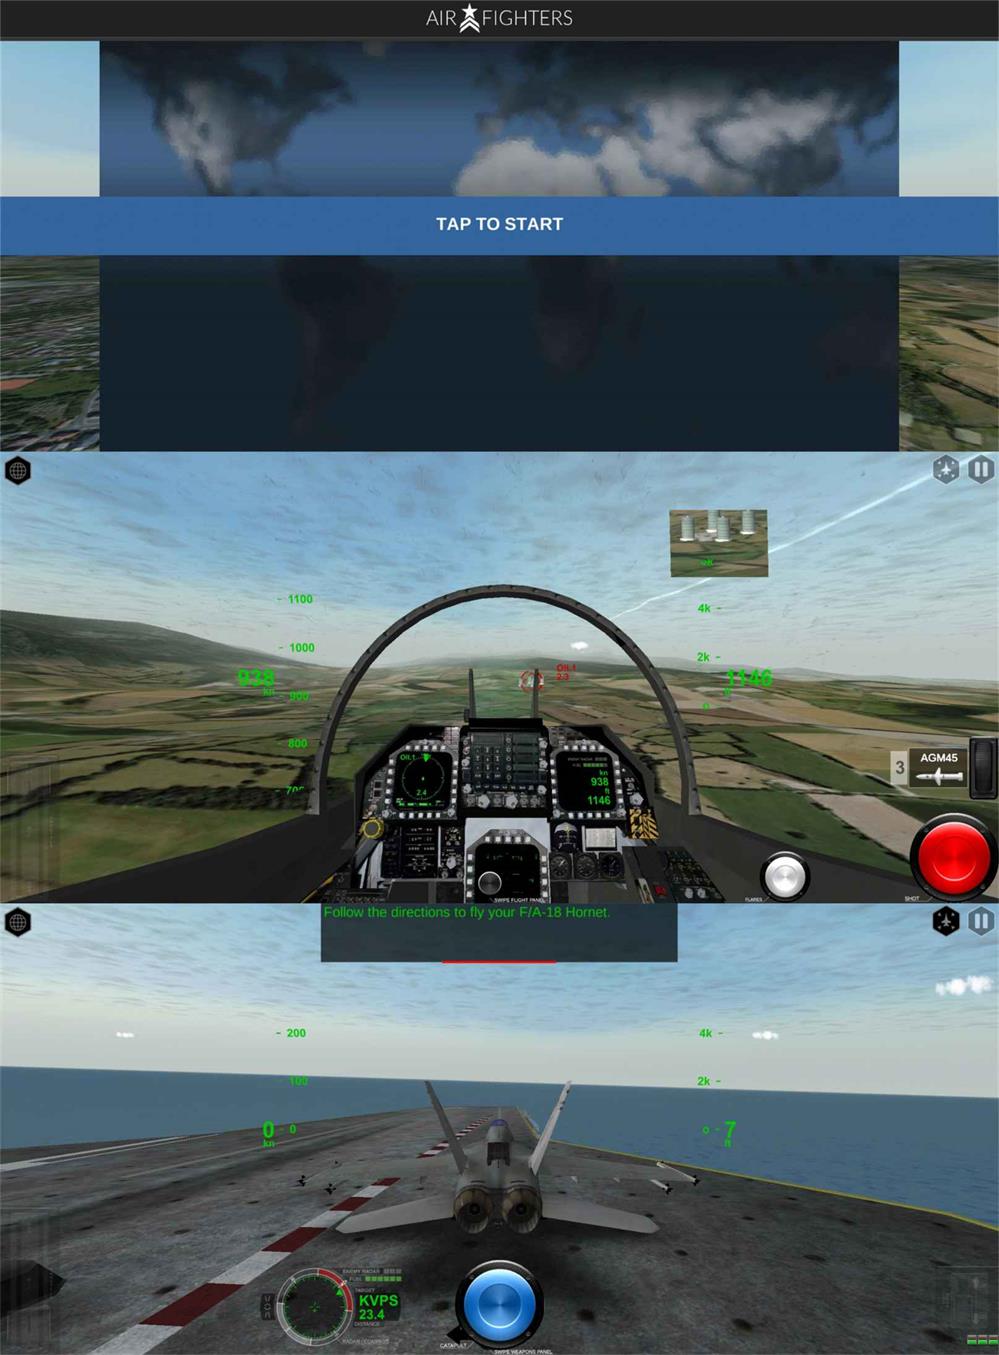 真实模拟飞行游戏 模拟空战 图片